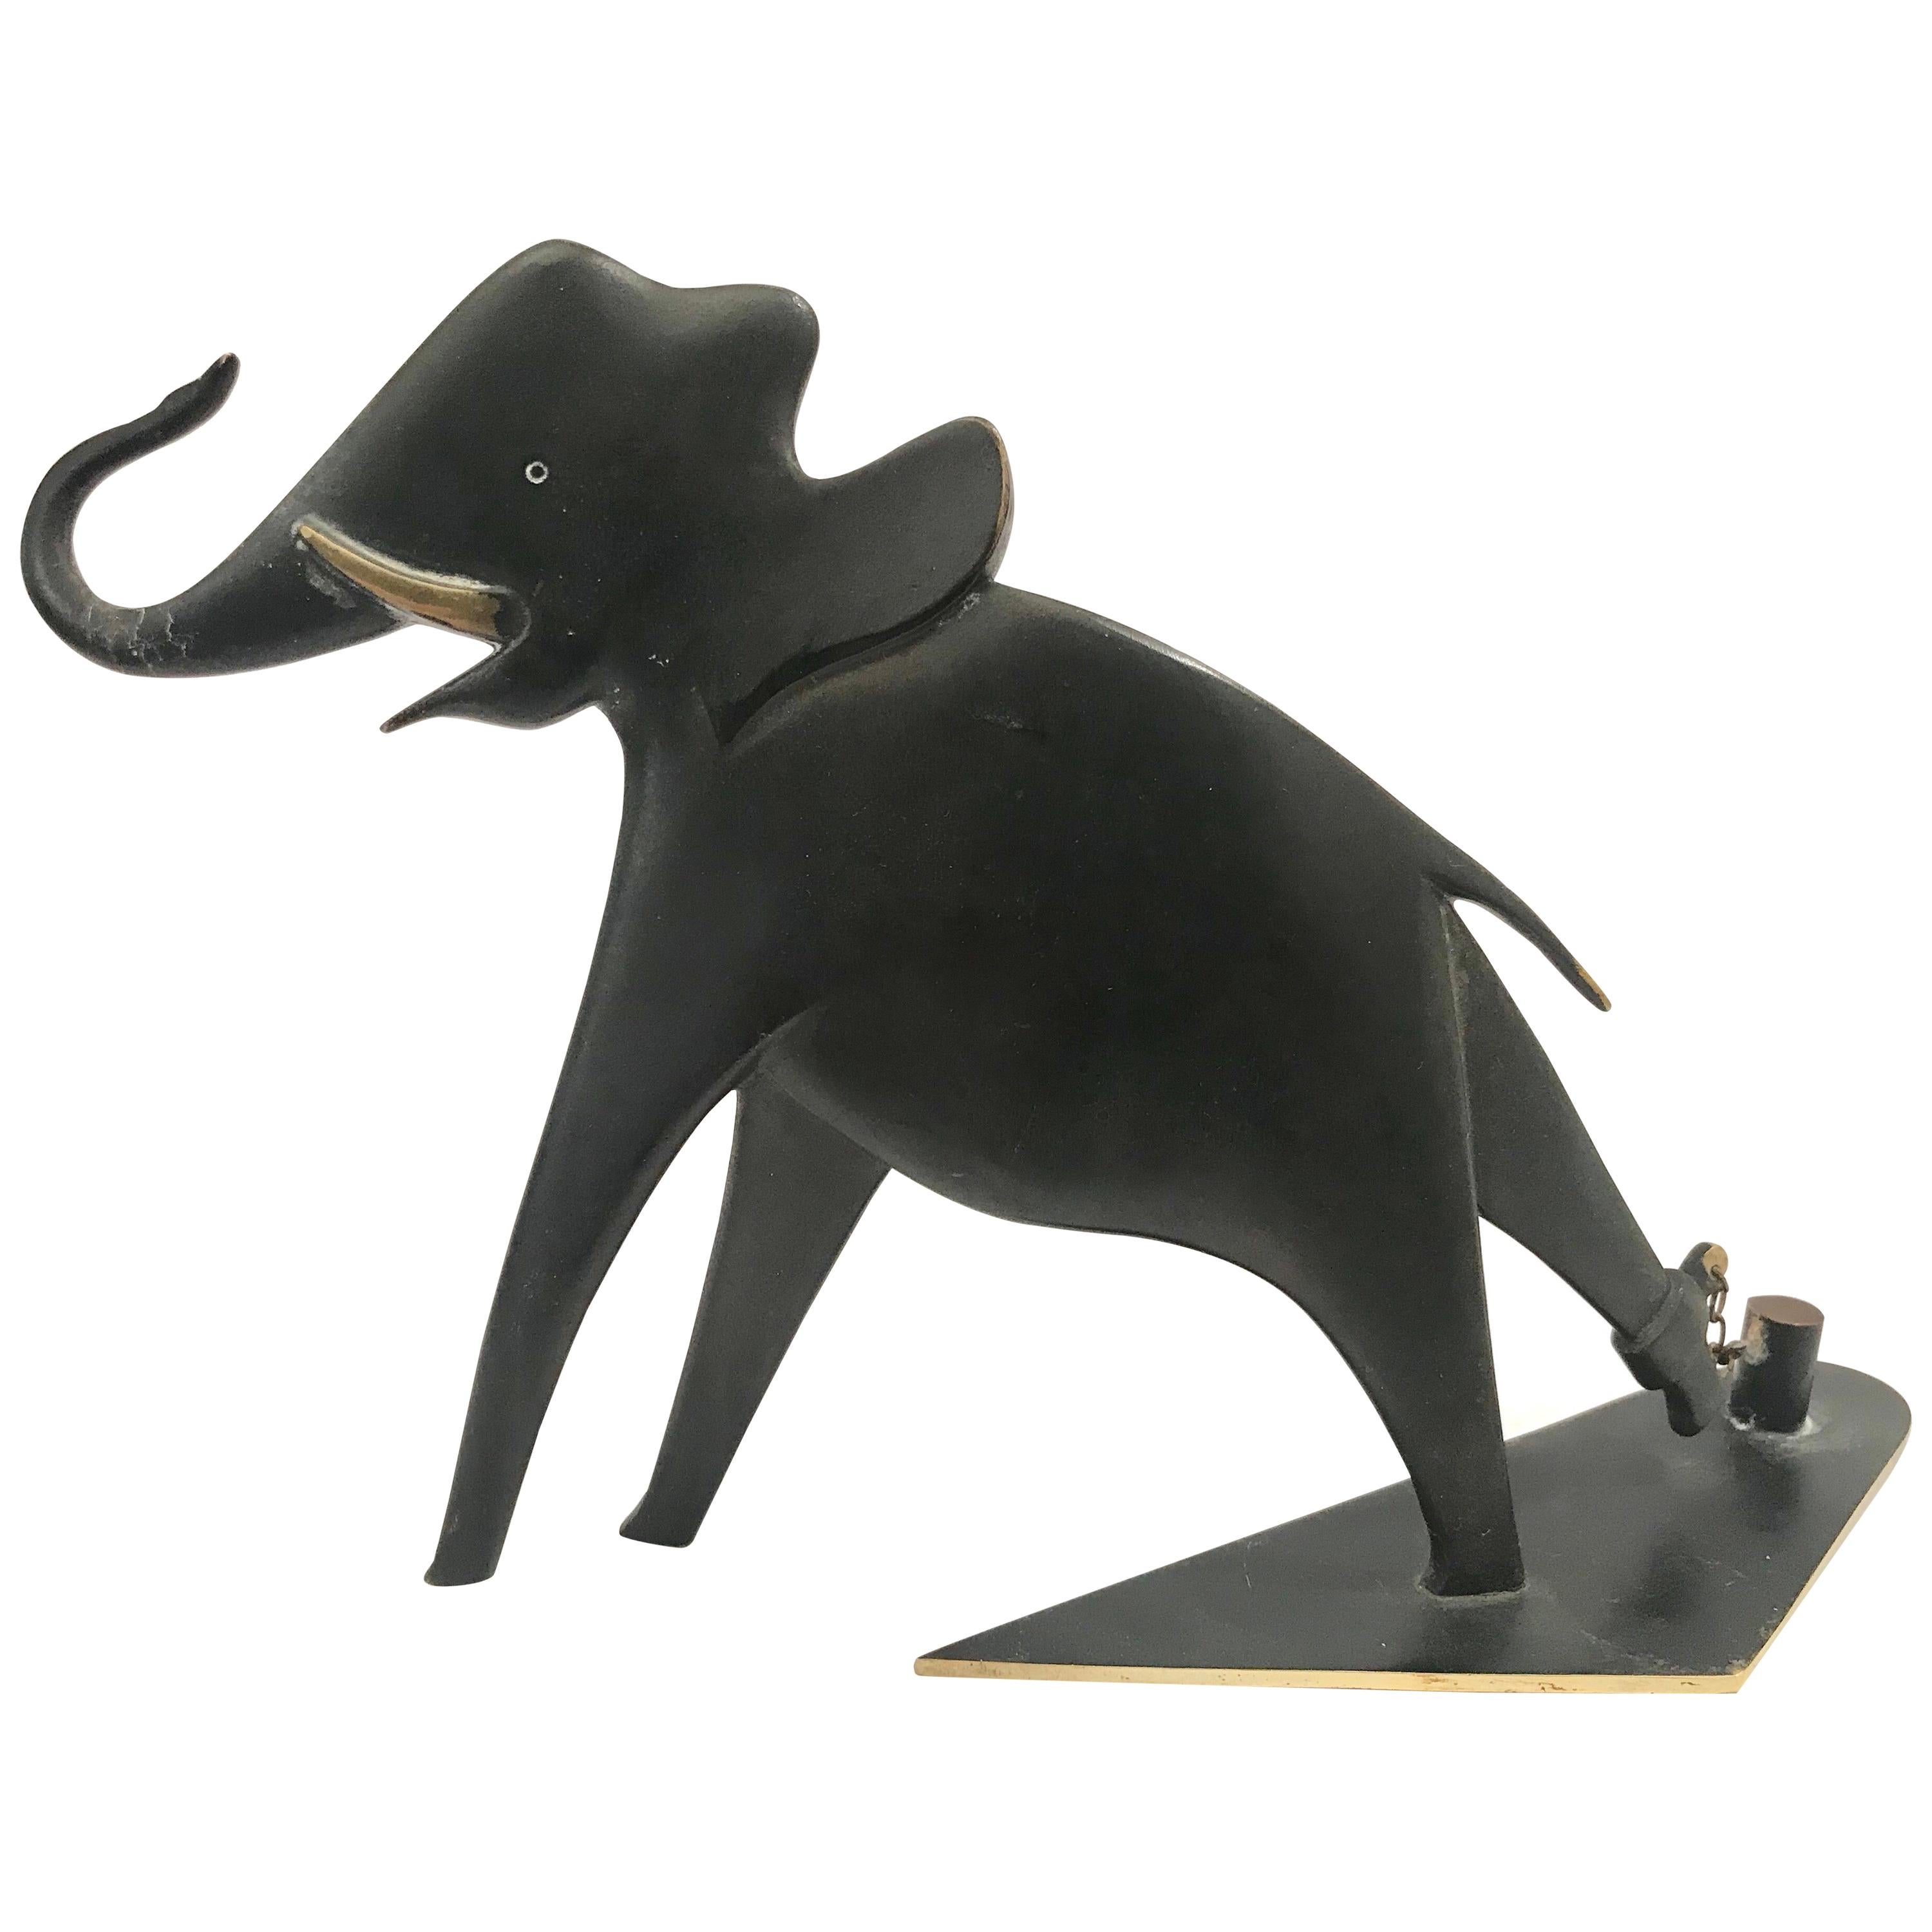 Werkstatte Hagenauer Wien Patinated Bronze Elephant im Angebot